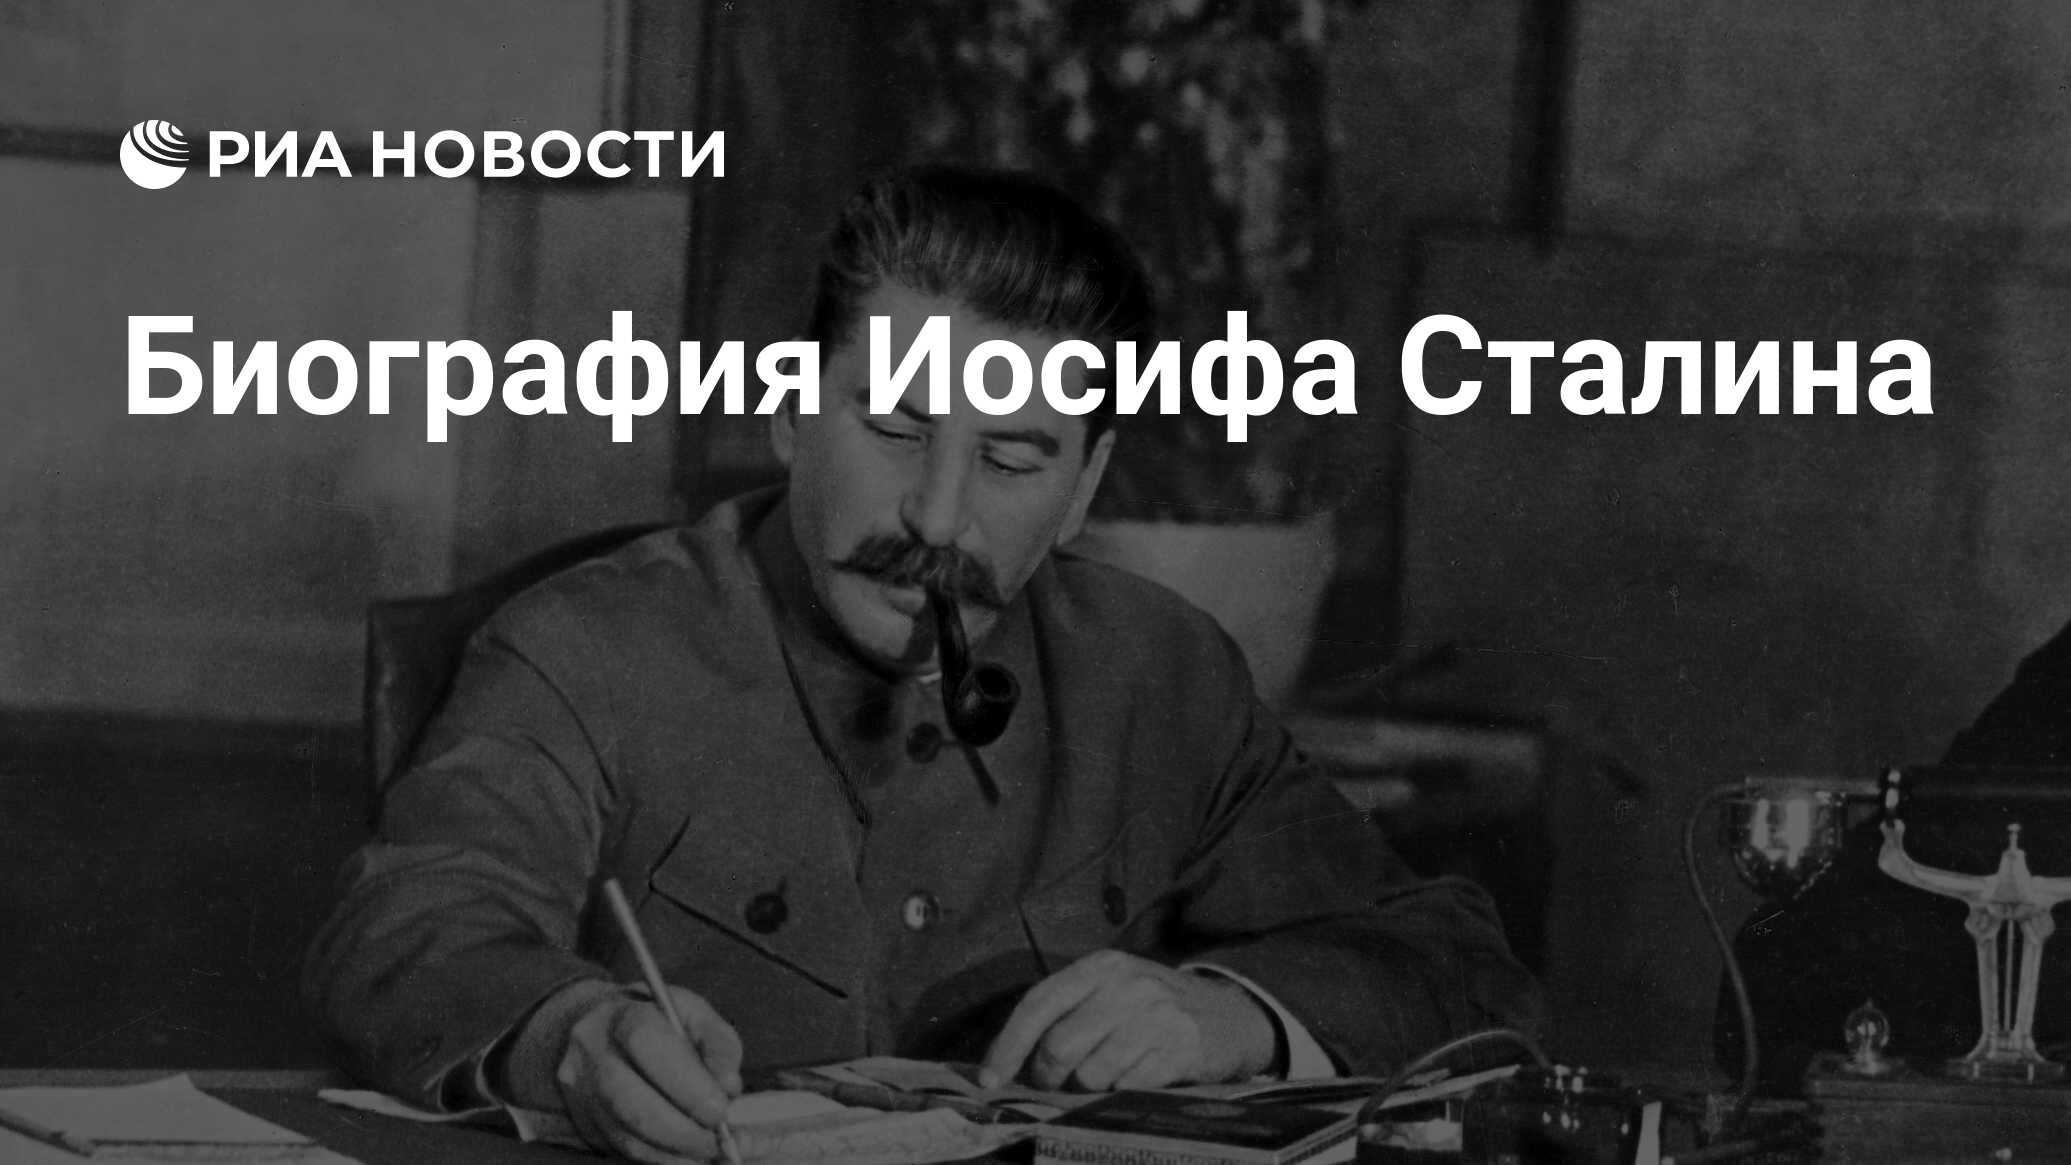 Биография Иосифа Сталина - РИА Новости, 08.08.2017